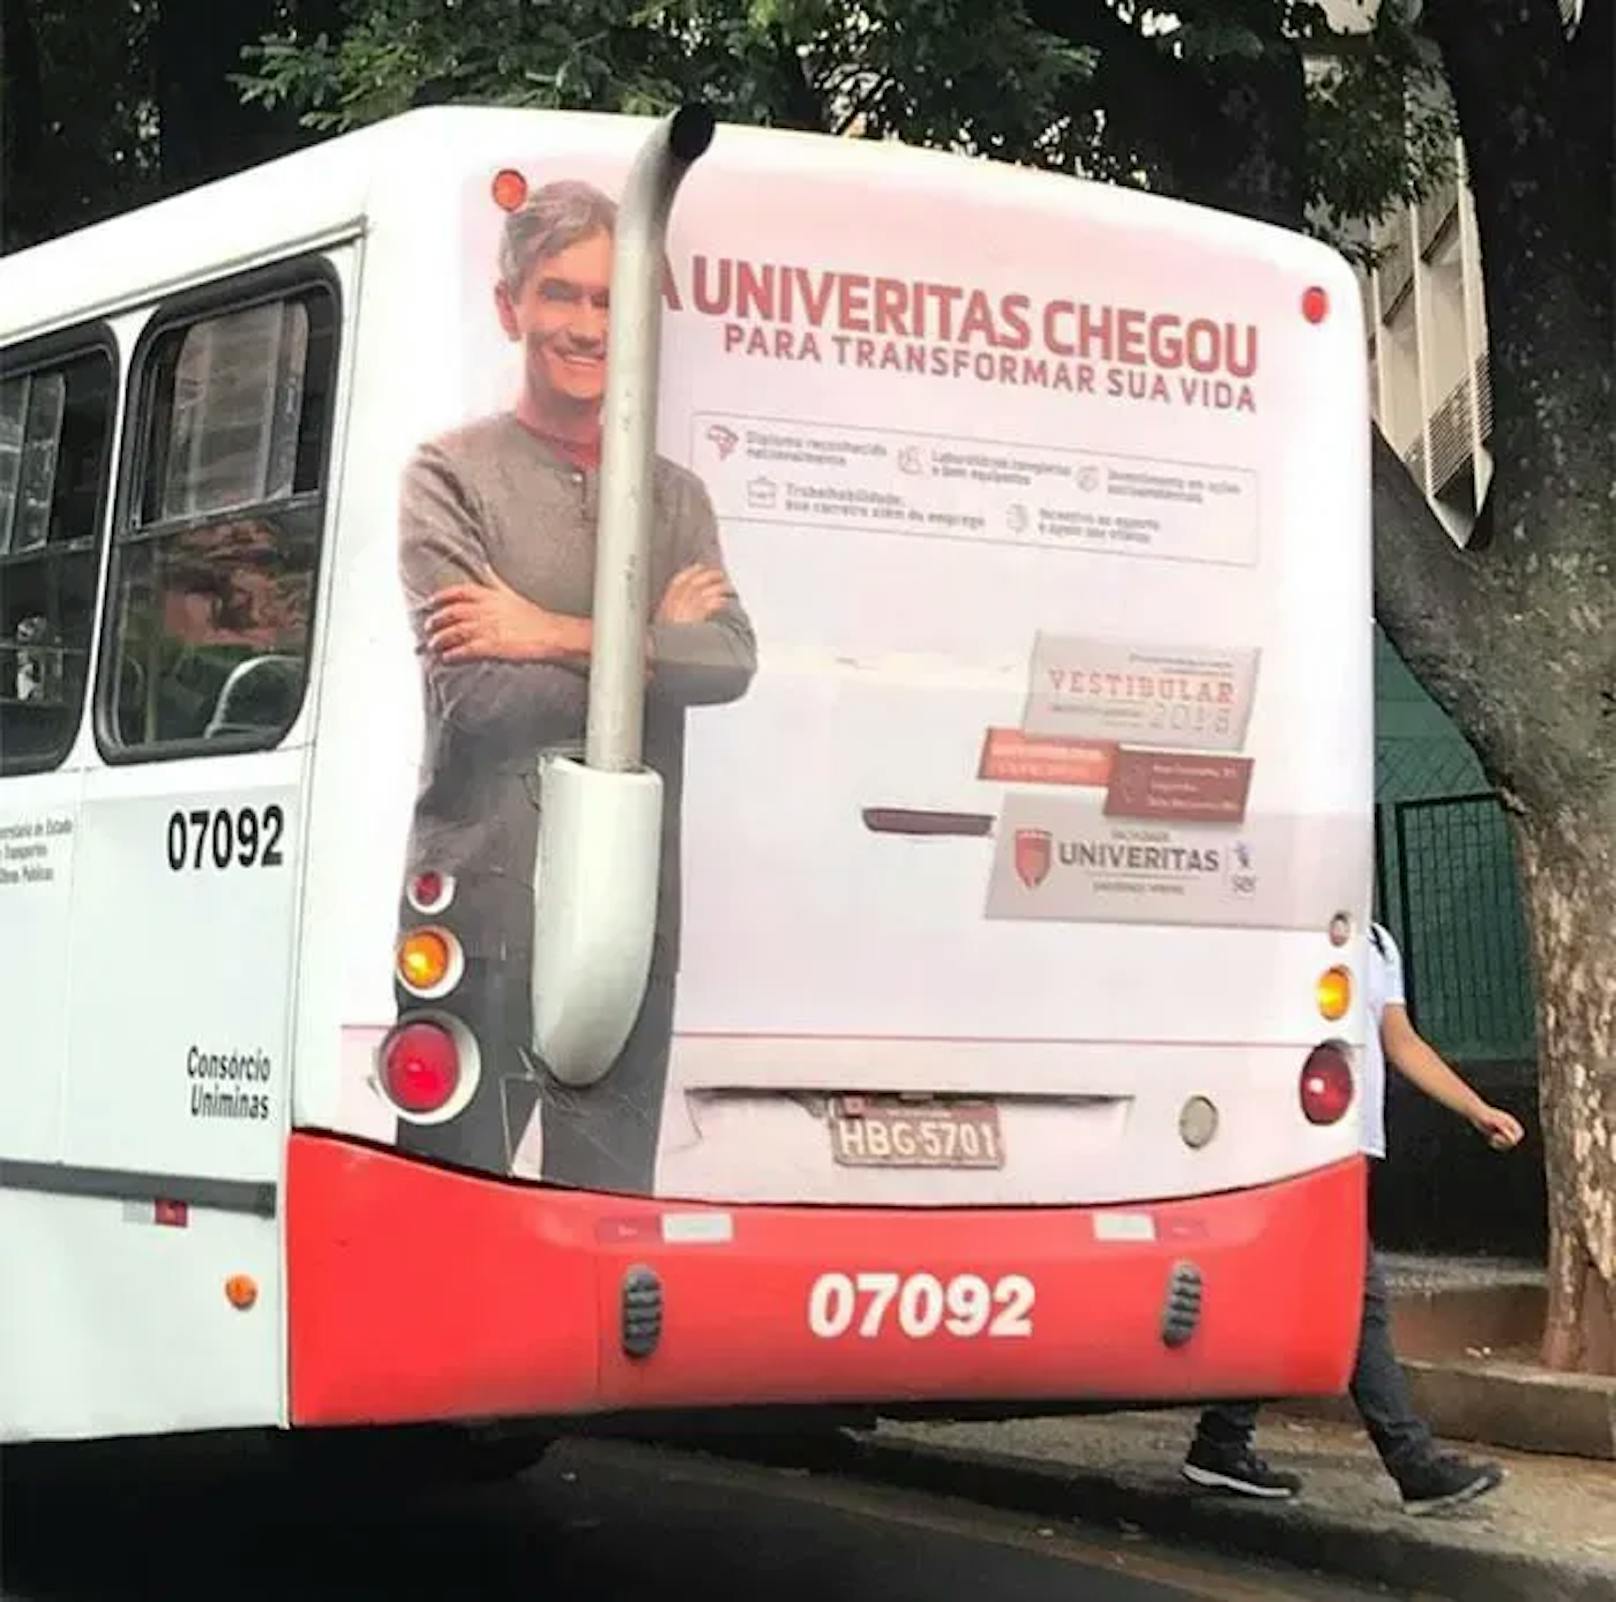 Hier wird für eine Universität geworben. Der Mann auf der linken Seite sieht dabei so aus, als wäre er erfreut darüber, dass die Werbung auf dem Bus strategisch günstig platziert worden ist.